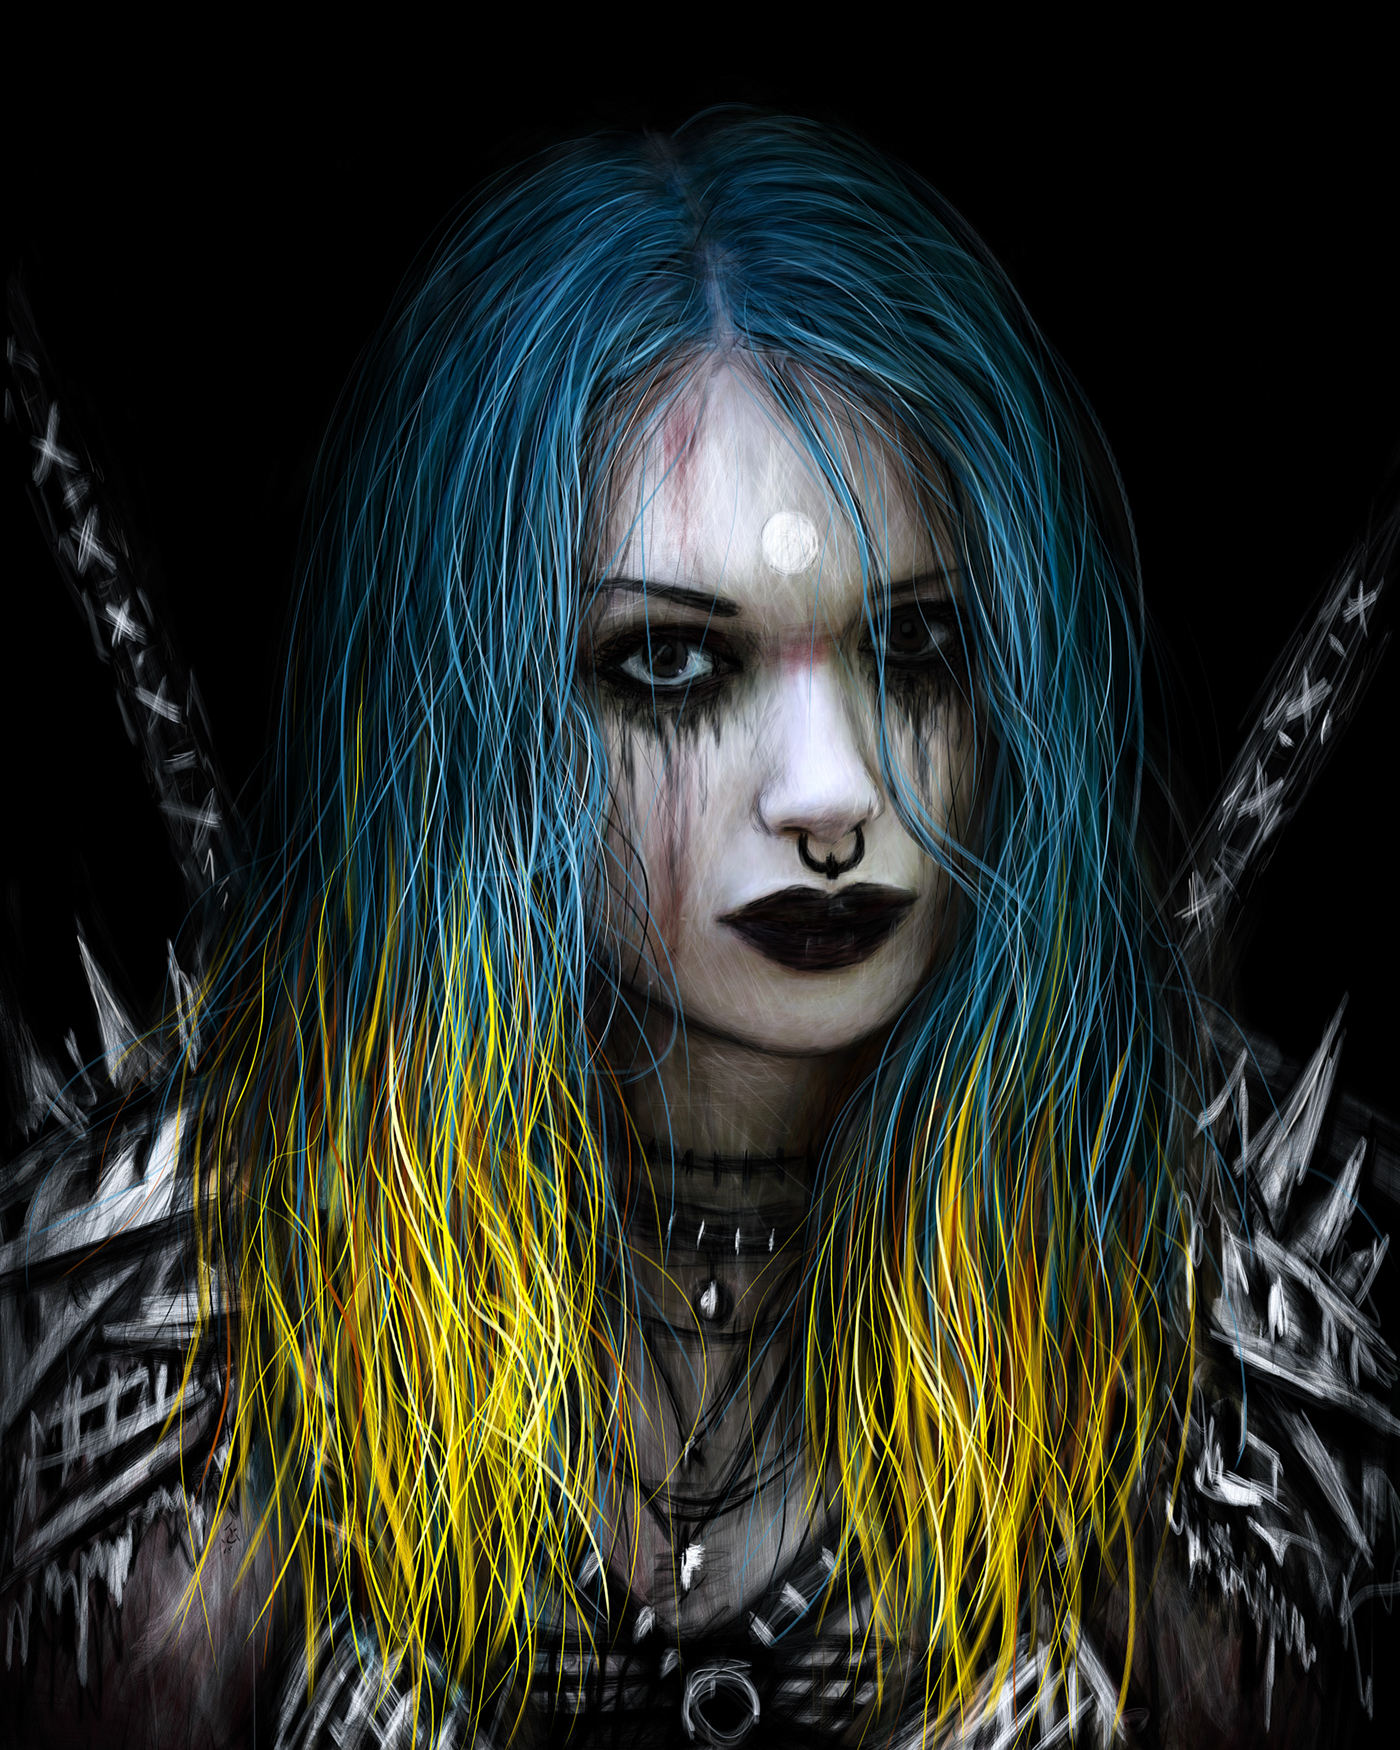 goth gothic Dark Fantasy portrait teal fantasy woman female blue hair dark